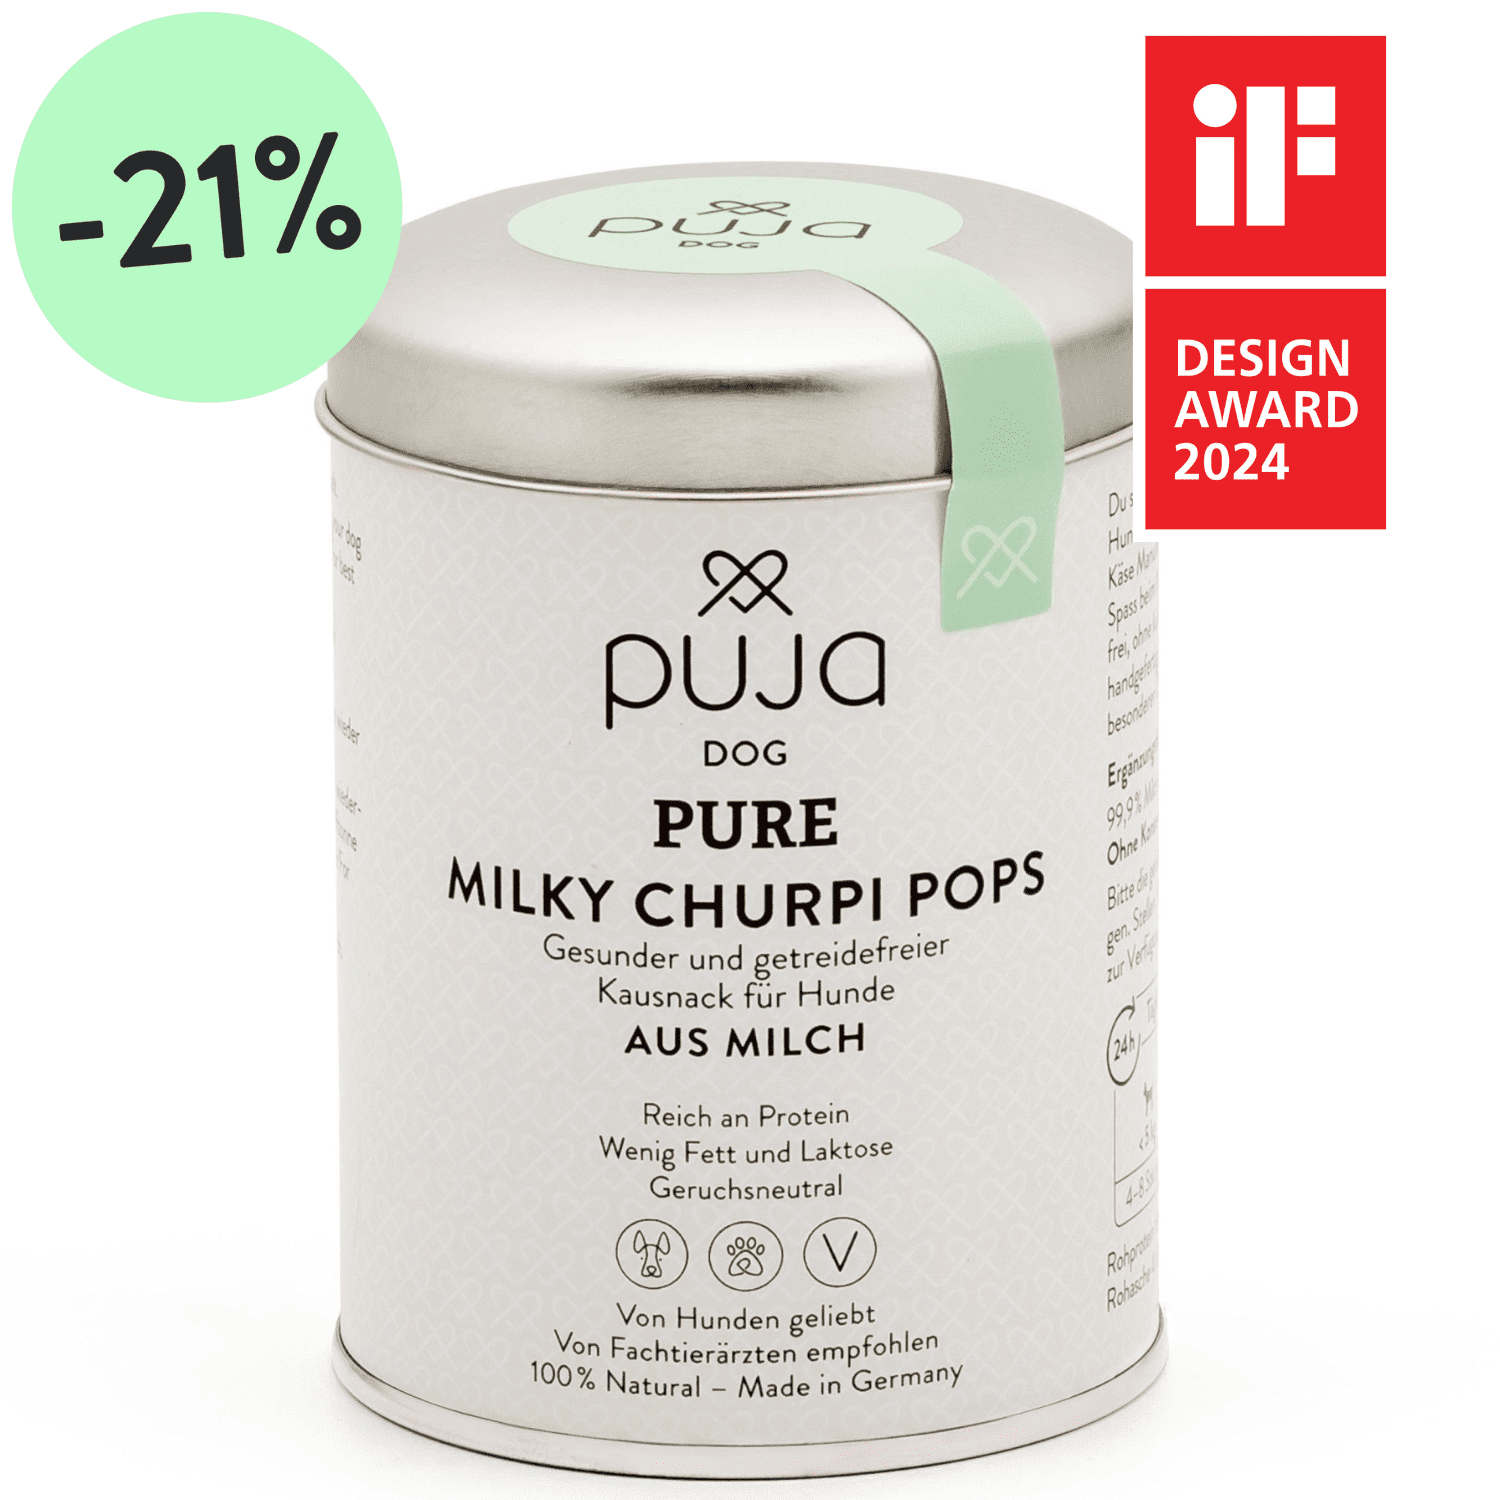 Pure Milky Churpi Pops für Hunde - Gesunder und getreidefreier Kausnack aus Milch 45g